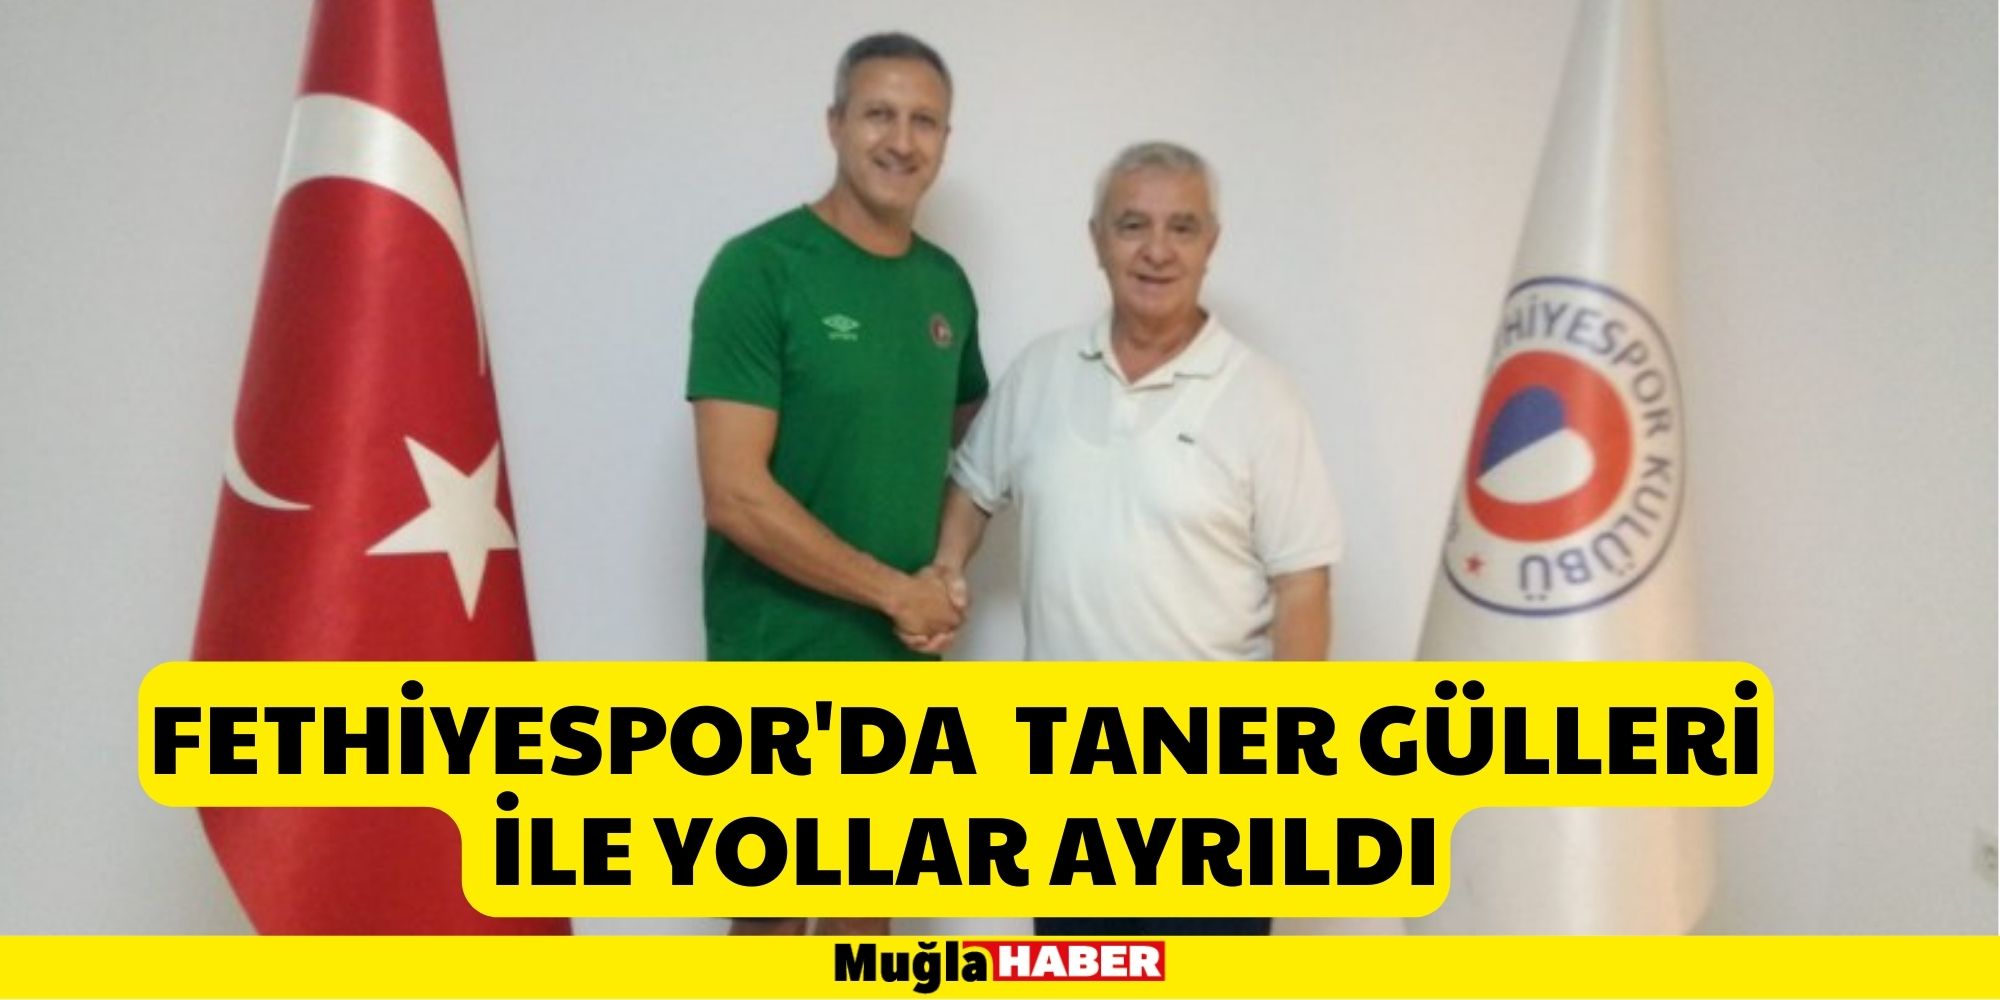 Fethiyespor'da teknik direktör Taner Gülleri ile yollar ayrıldı